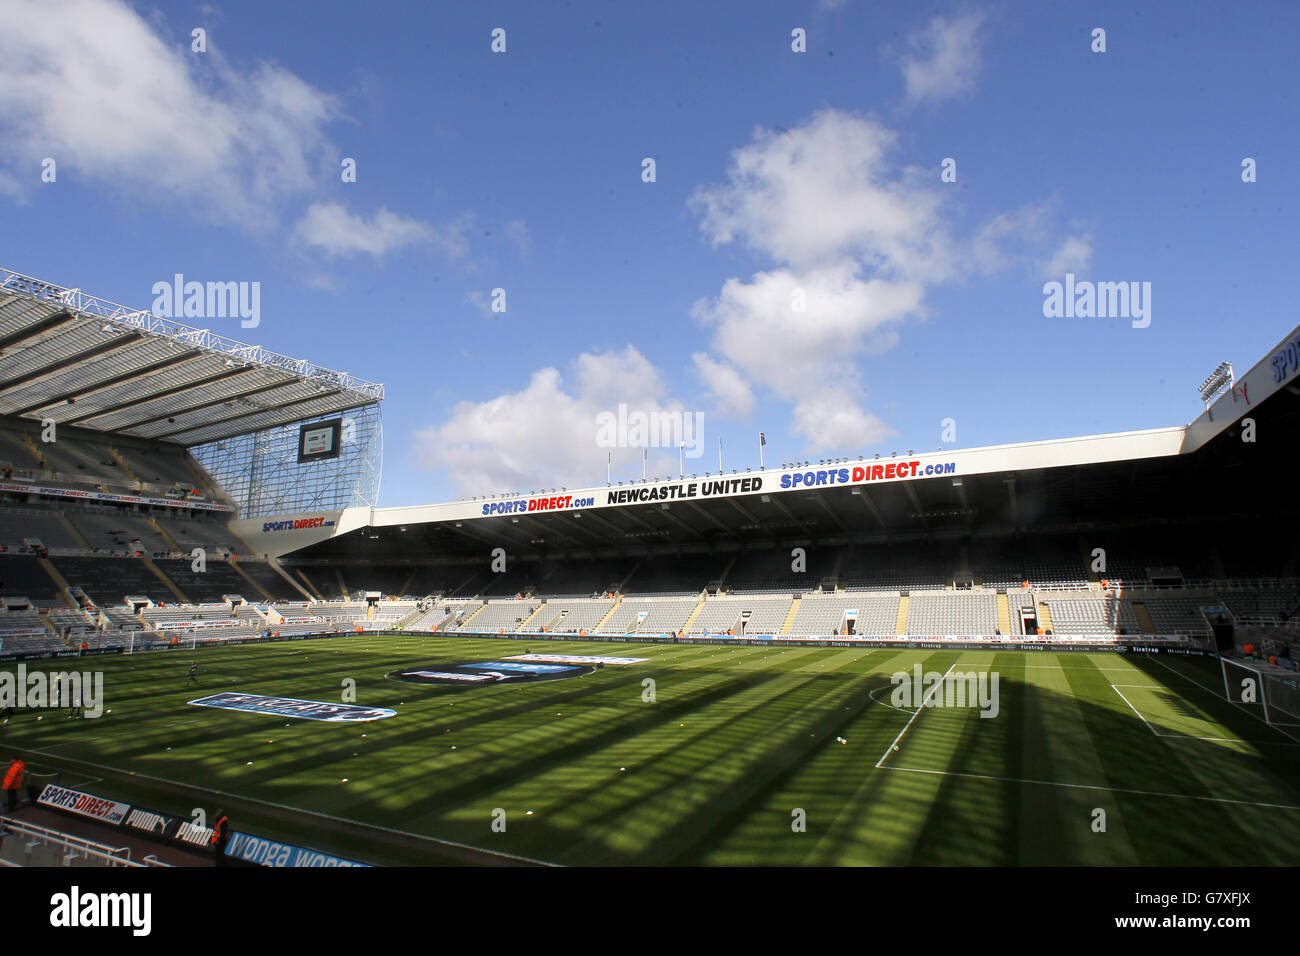 Soccer - Barclays Premier League - Newcastle United v Tottenham Hotspur - St James' Park. General view of St James' Park Stock Photo